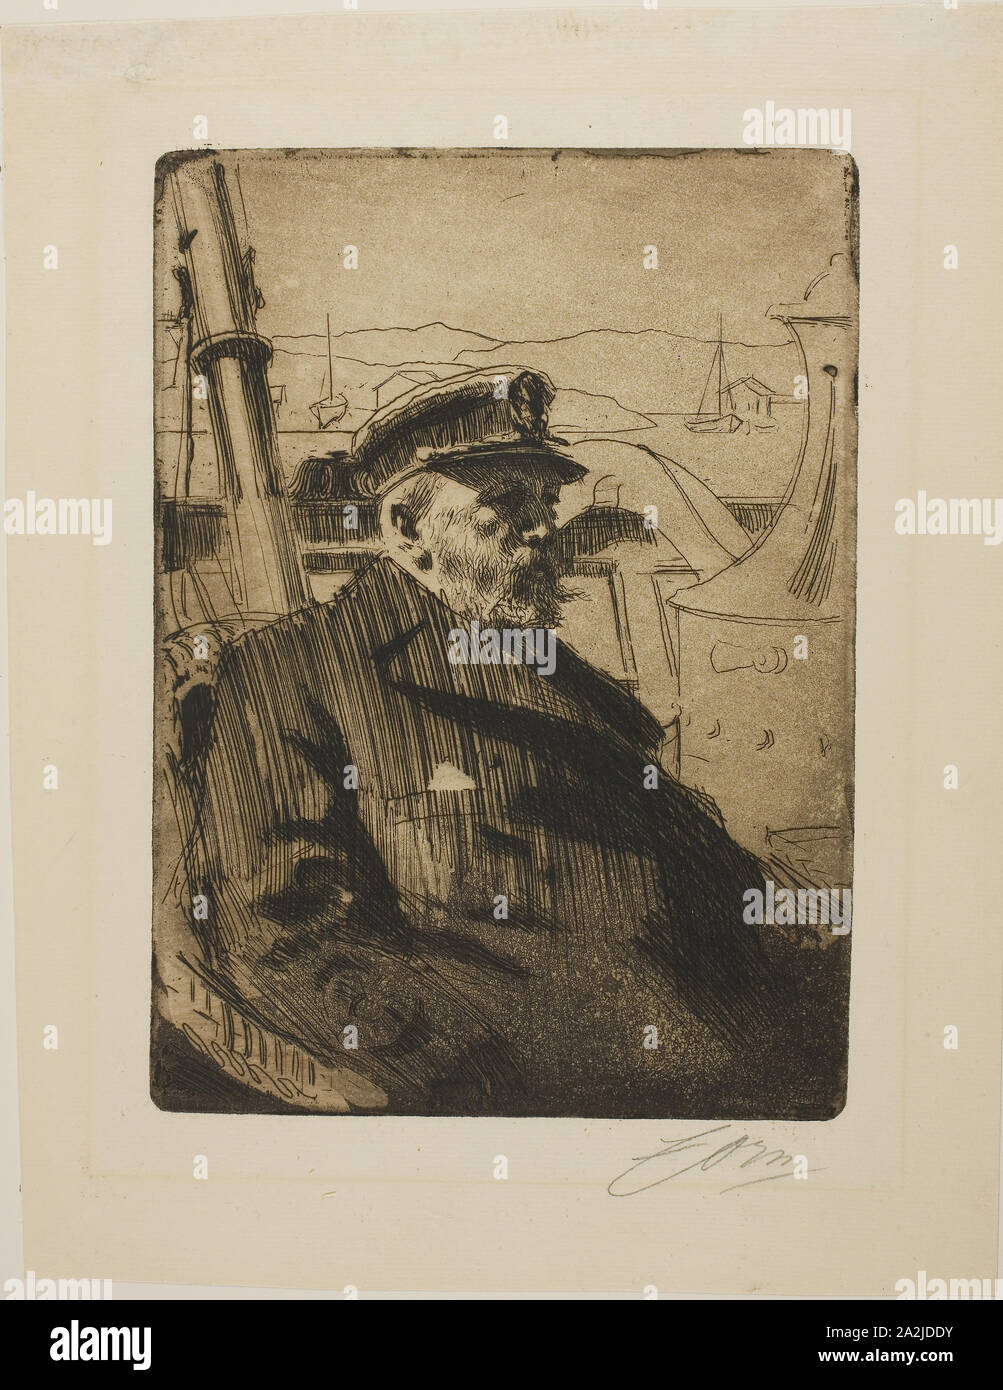 El rey Oscar II (segundo plato), de 1898, Anders Zorn, Sueco, 1860-1920, Suecia, Aguafuerte sobre papel establecido de marfil, 247 x 179 mm (imagen/placa), 327 x 254 mm (hoja Foto de stock